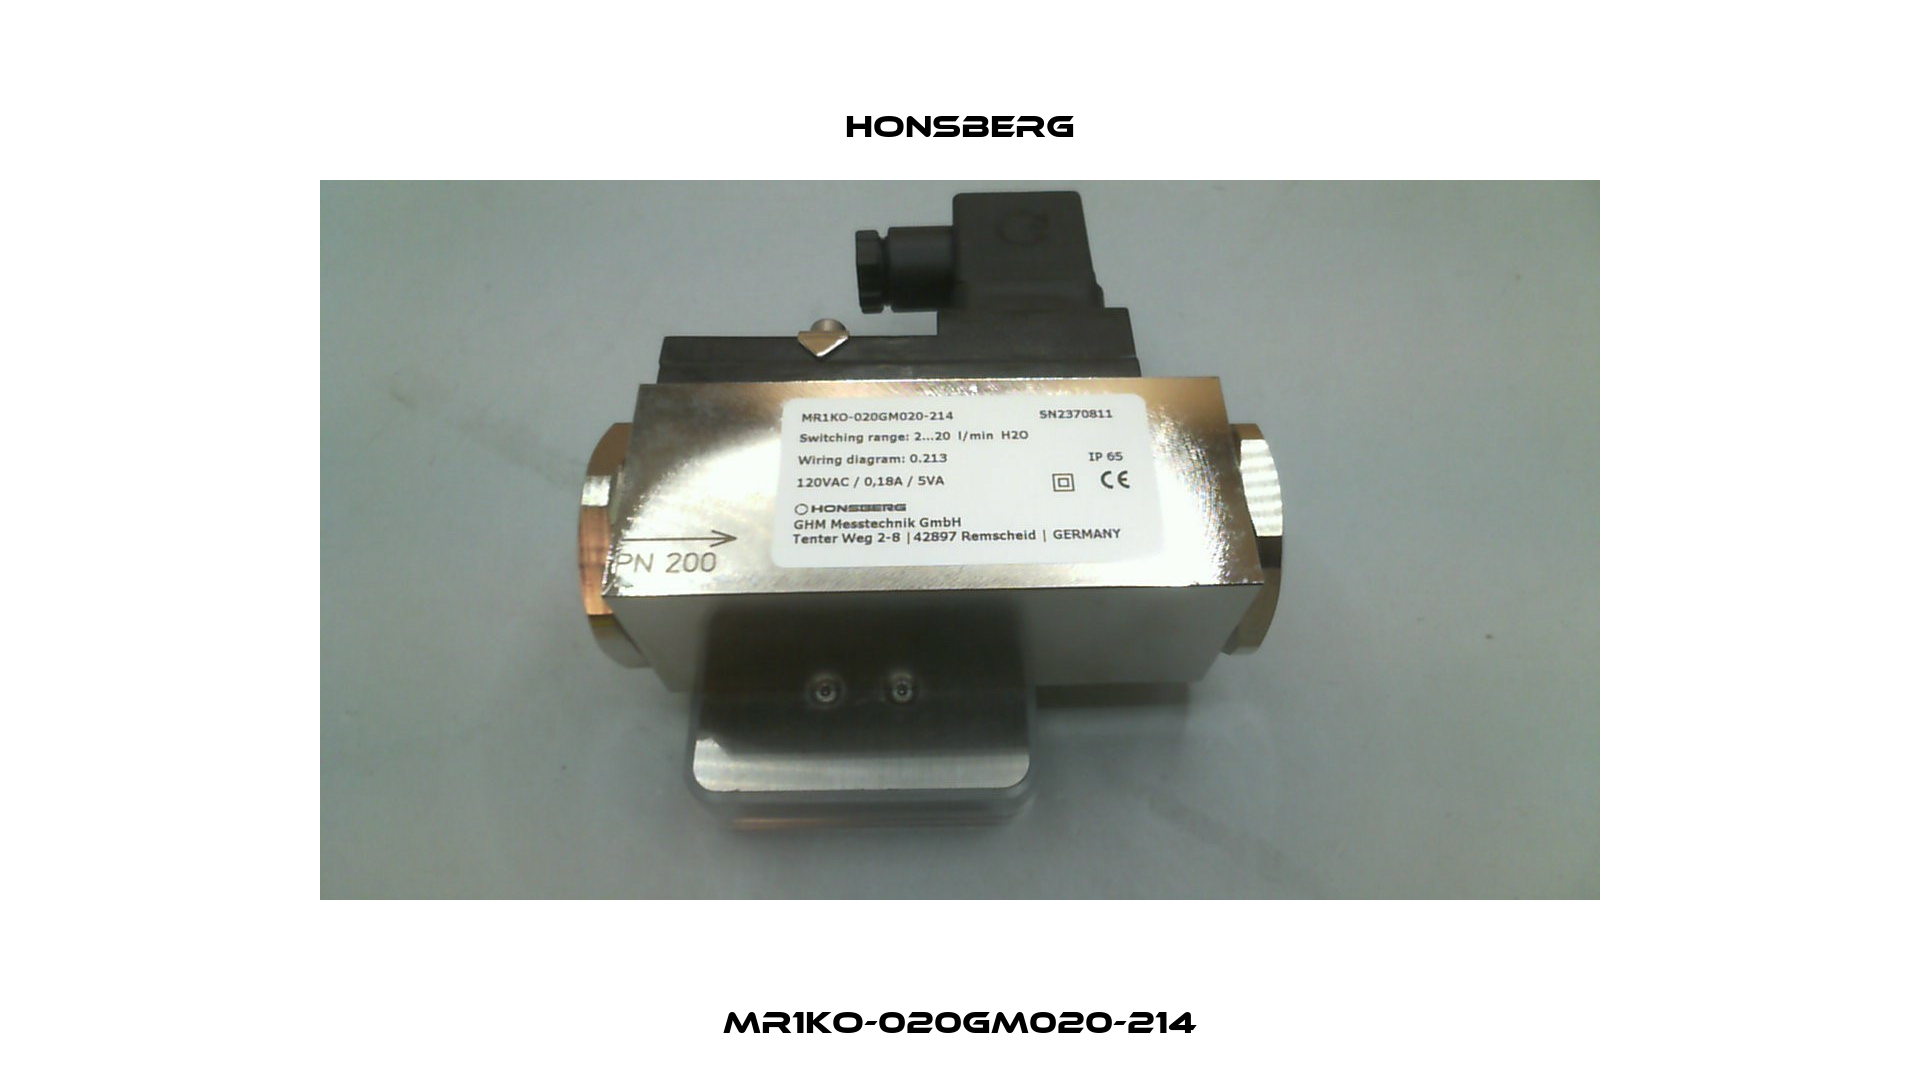 MR1KO-020GM020-214 Honsberg